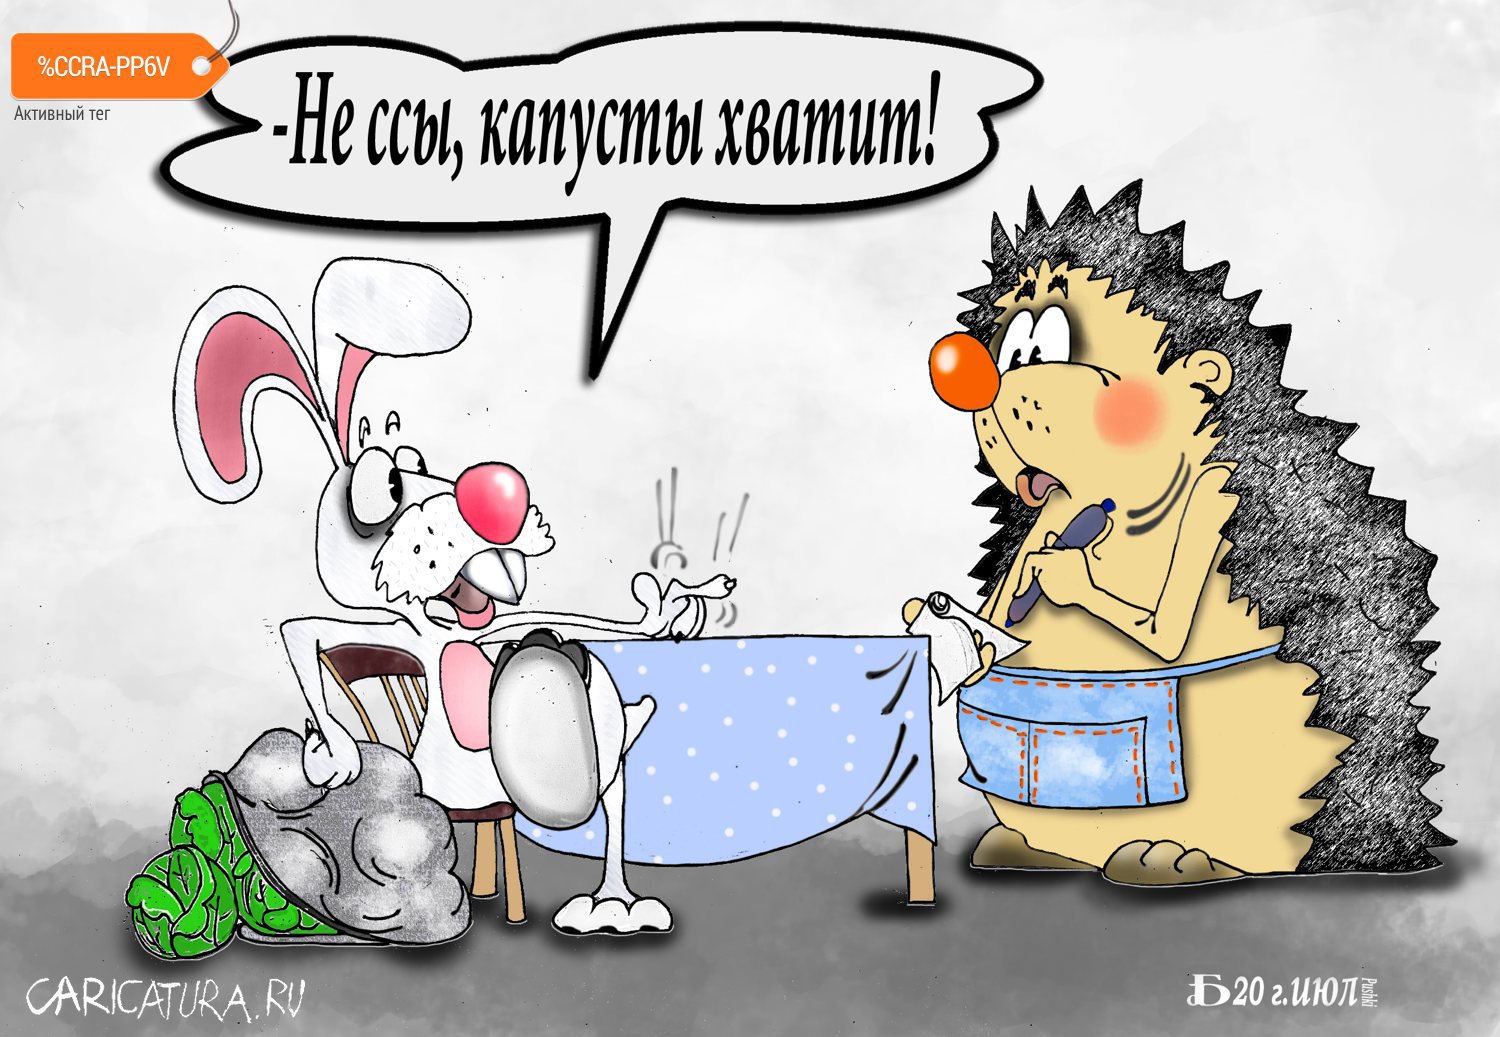 Карикатура "Про текучесть кадров", Борис Демин